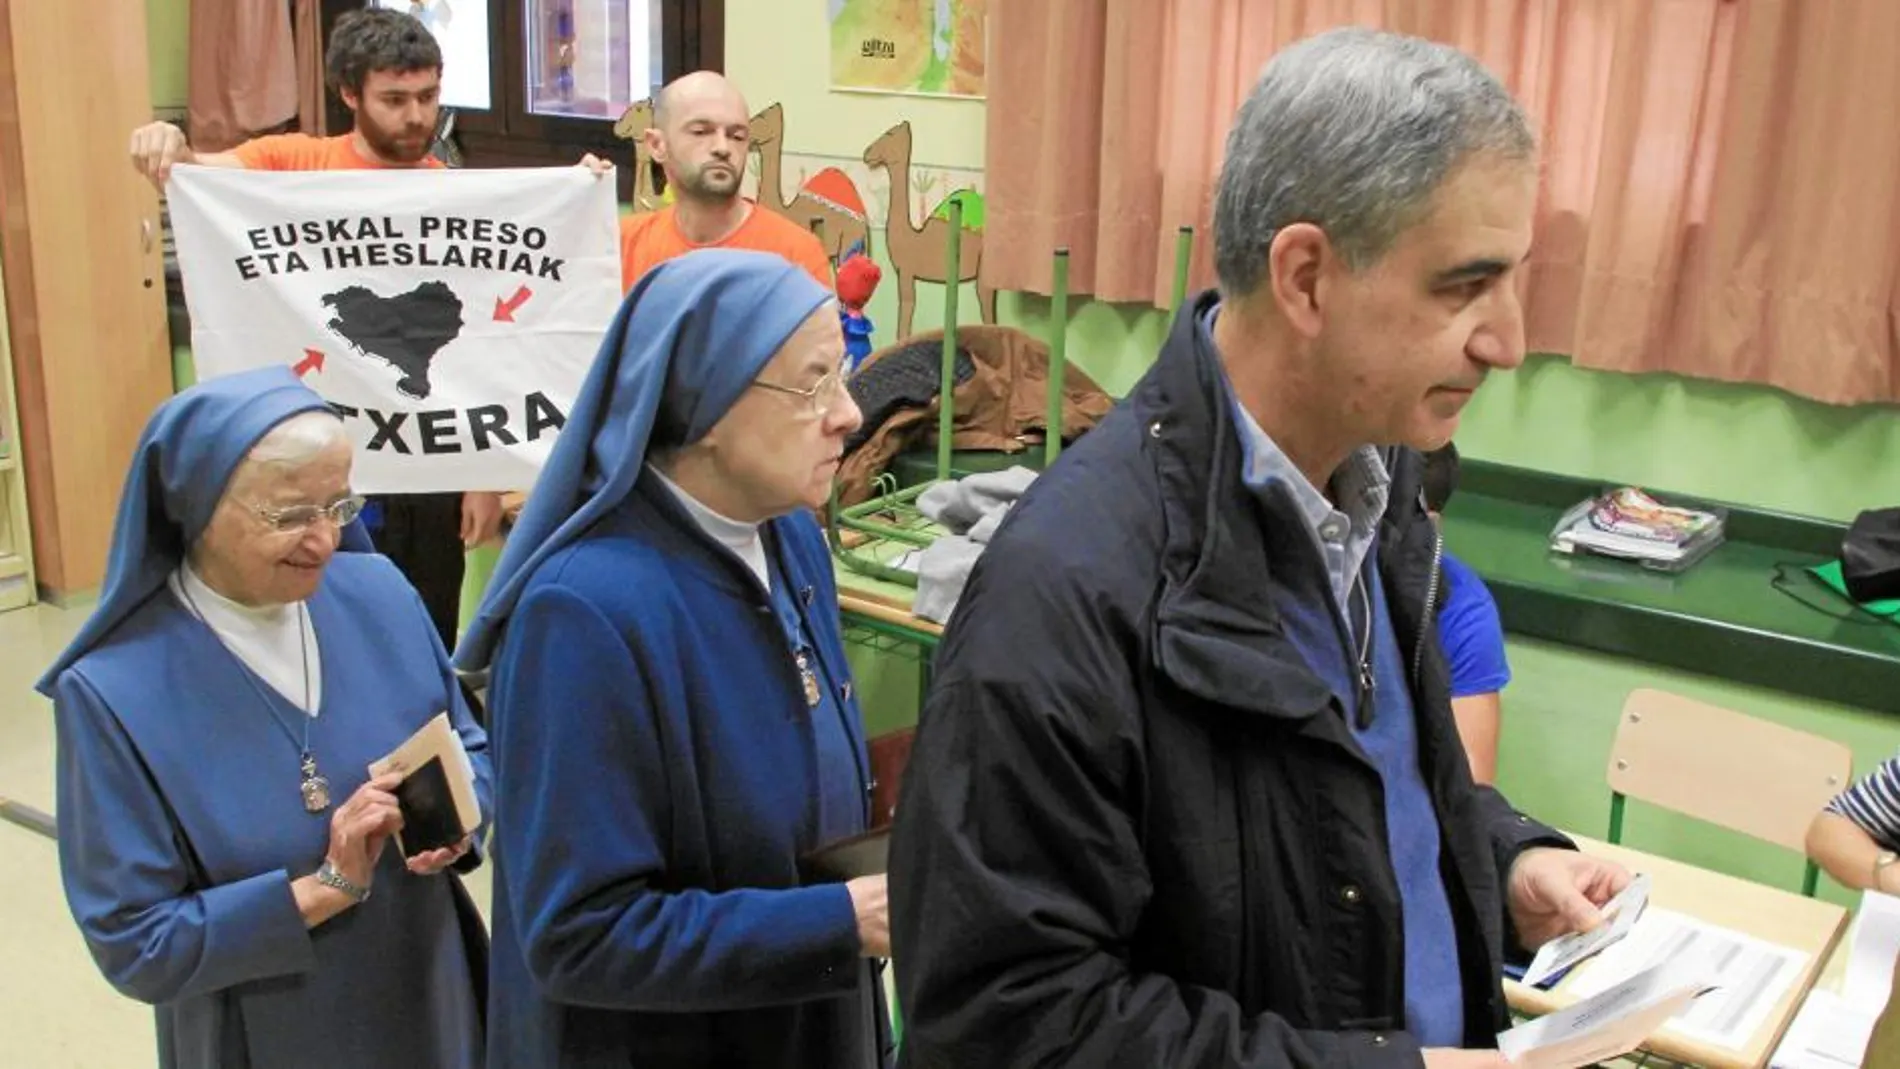 Leopoldo Barrera, cabeza del PP por Vizcaya, al ir a votar, mientras apoderados de Bildu muestran una bandera a favor del acercamiento de presos de ETA